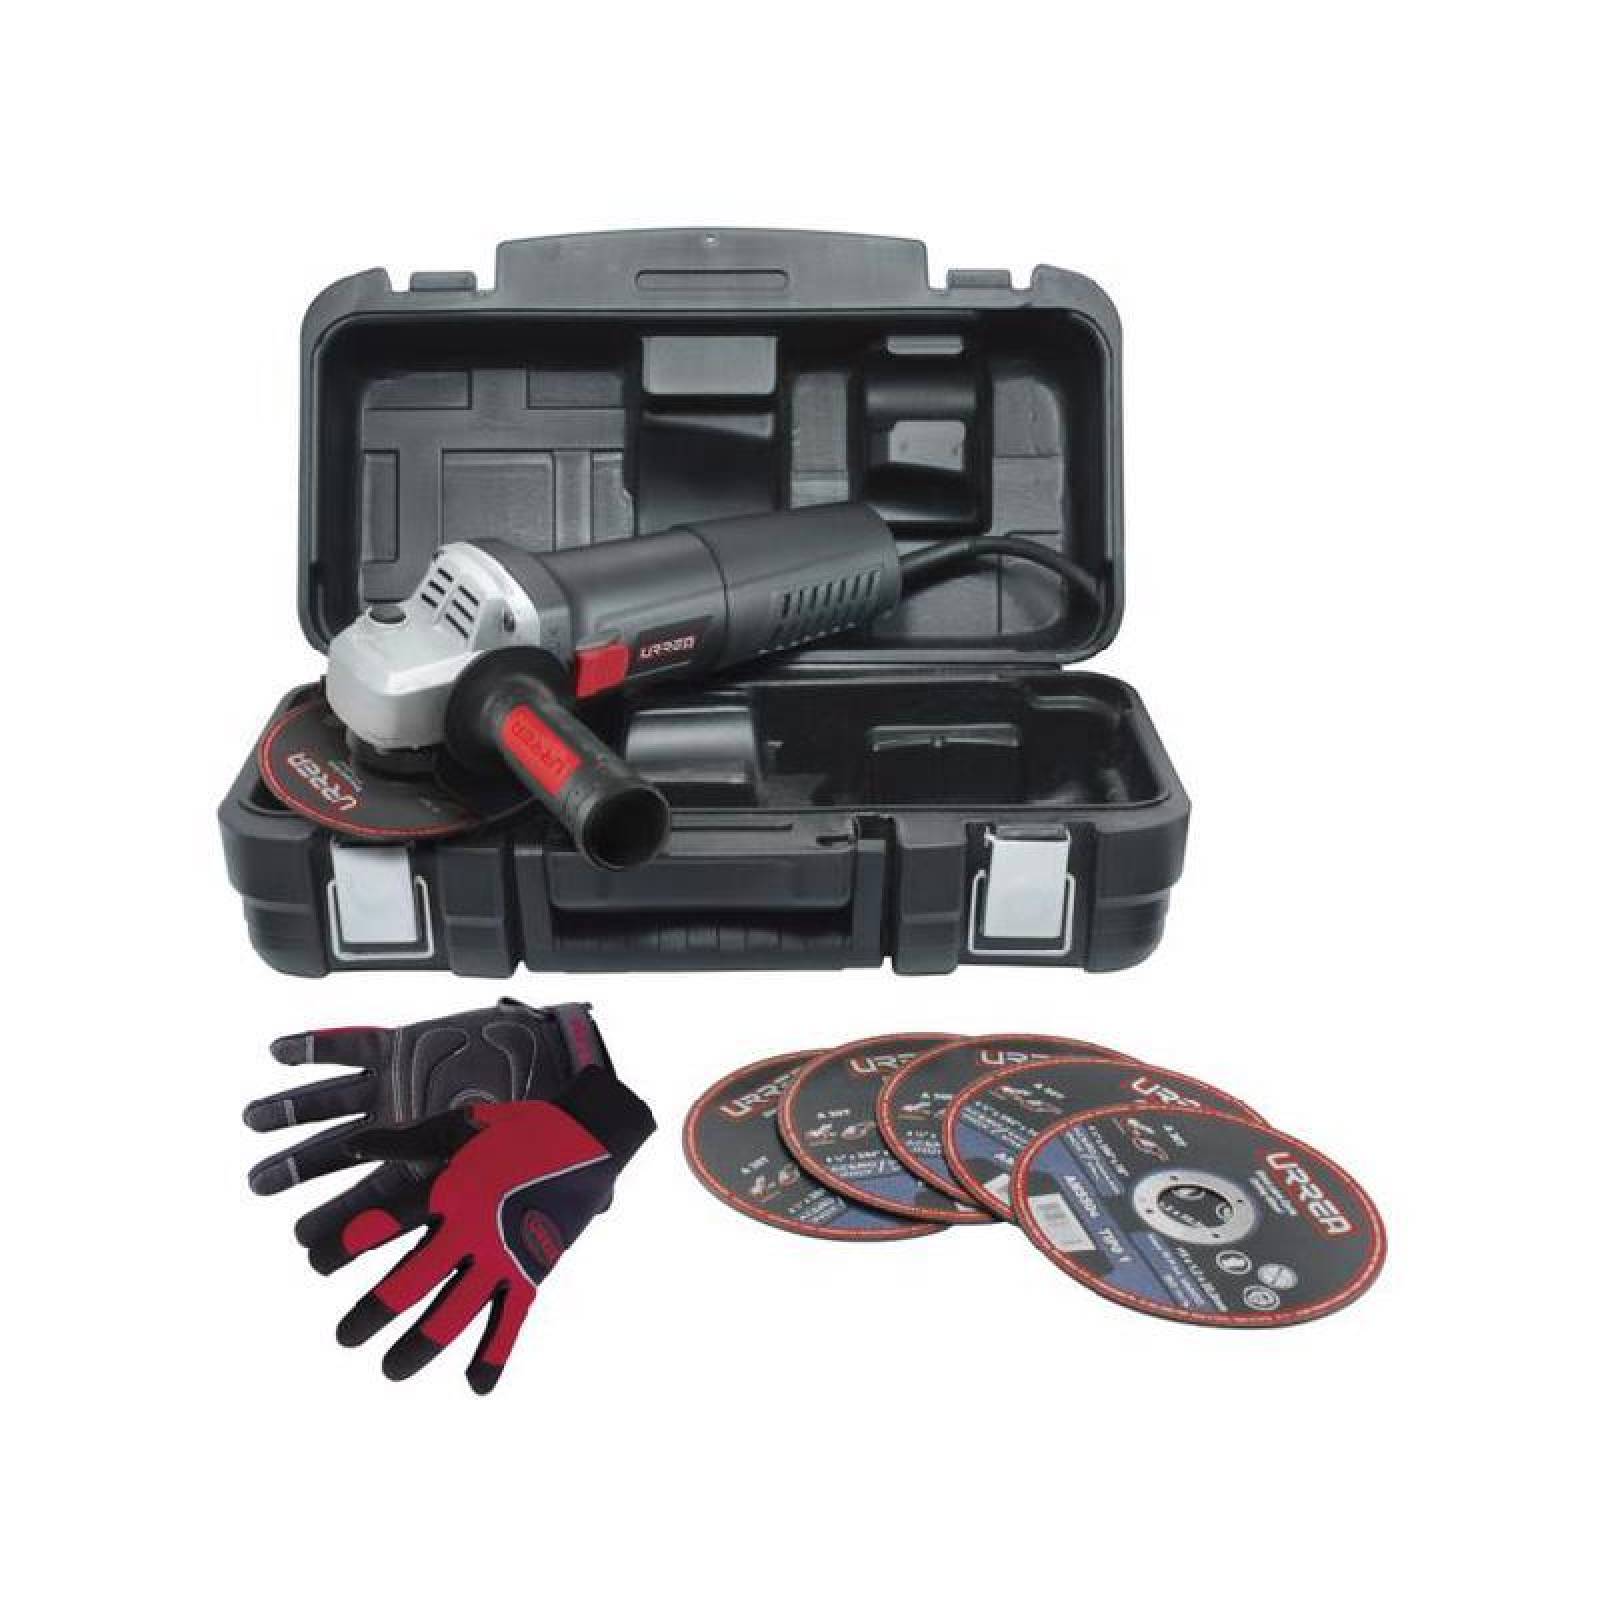 kit de guantes- discos y esmeriladora angular EA804AK - Codigo: EA804AK - Marca: Urrea 